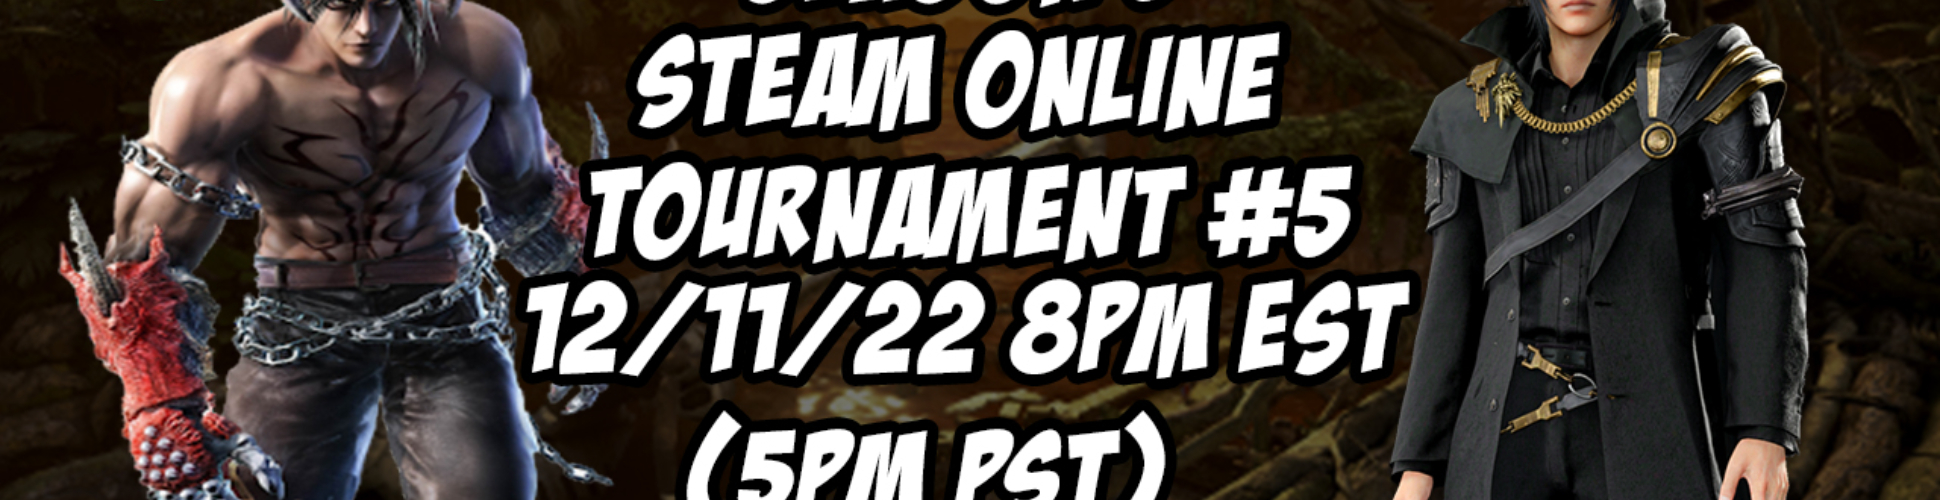 Tekken 7 Season 5 Steam Online Tournament #5 12/11/22 8pm EST